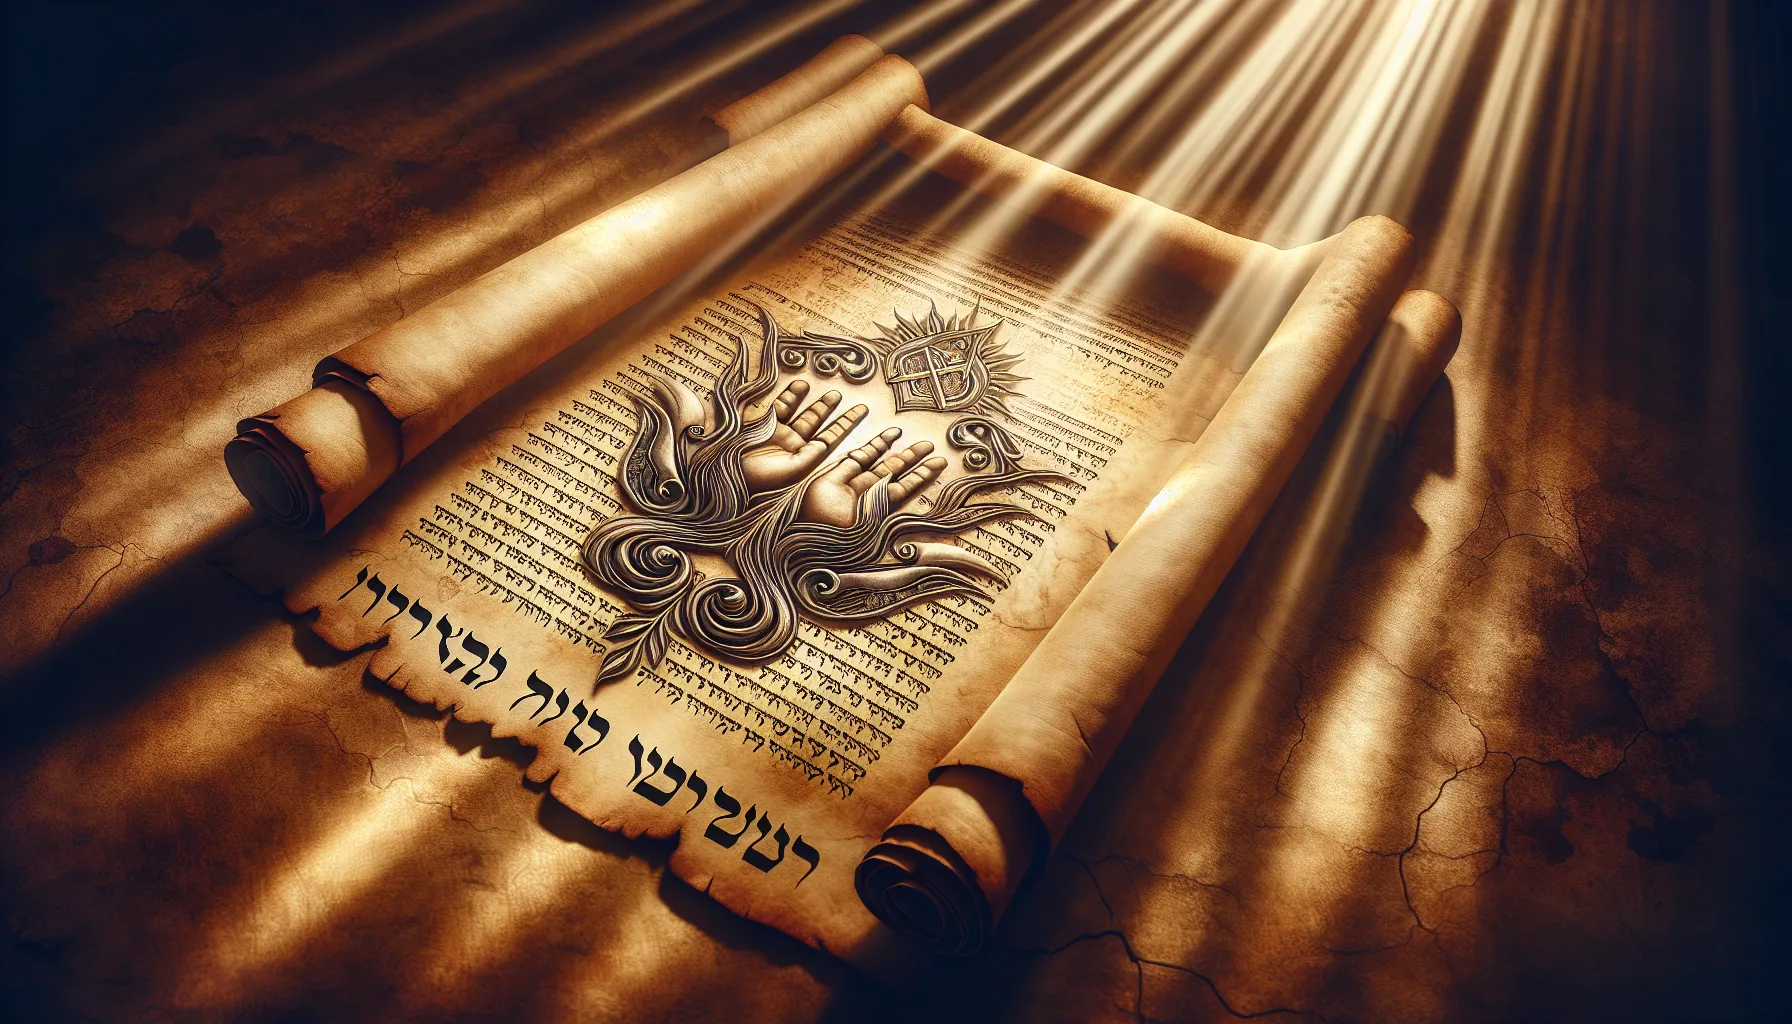 Imagen ilustrativa con rayos de luz divina sobre un pergamino antiguo con palabras en hebreo y un símbolo de manos entrelazadas en oración.